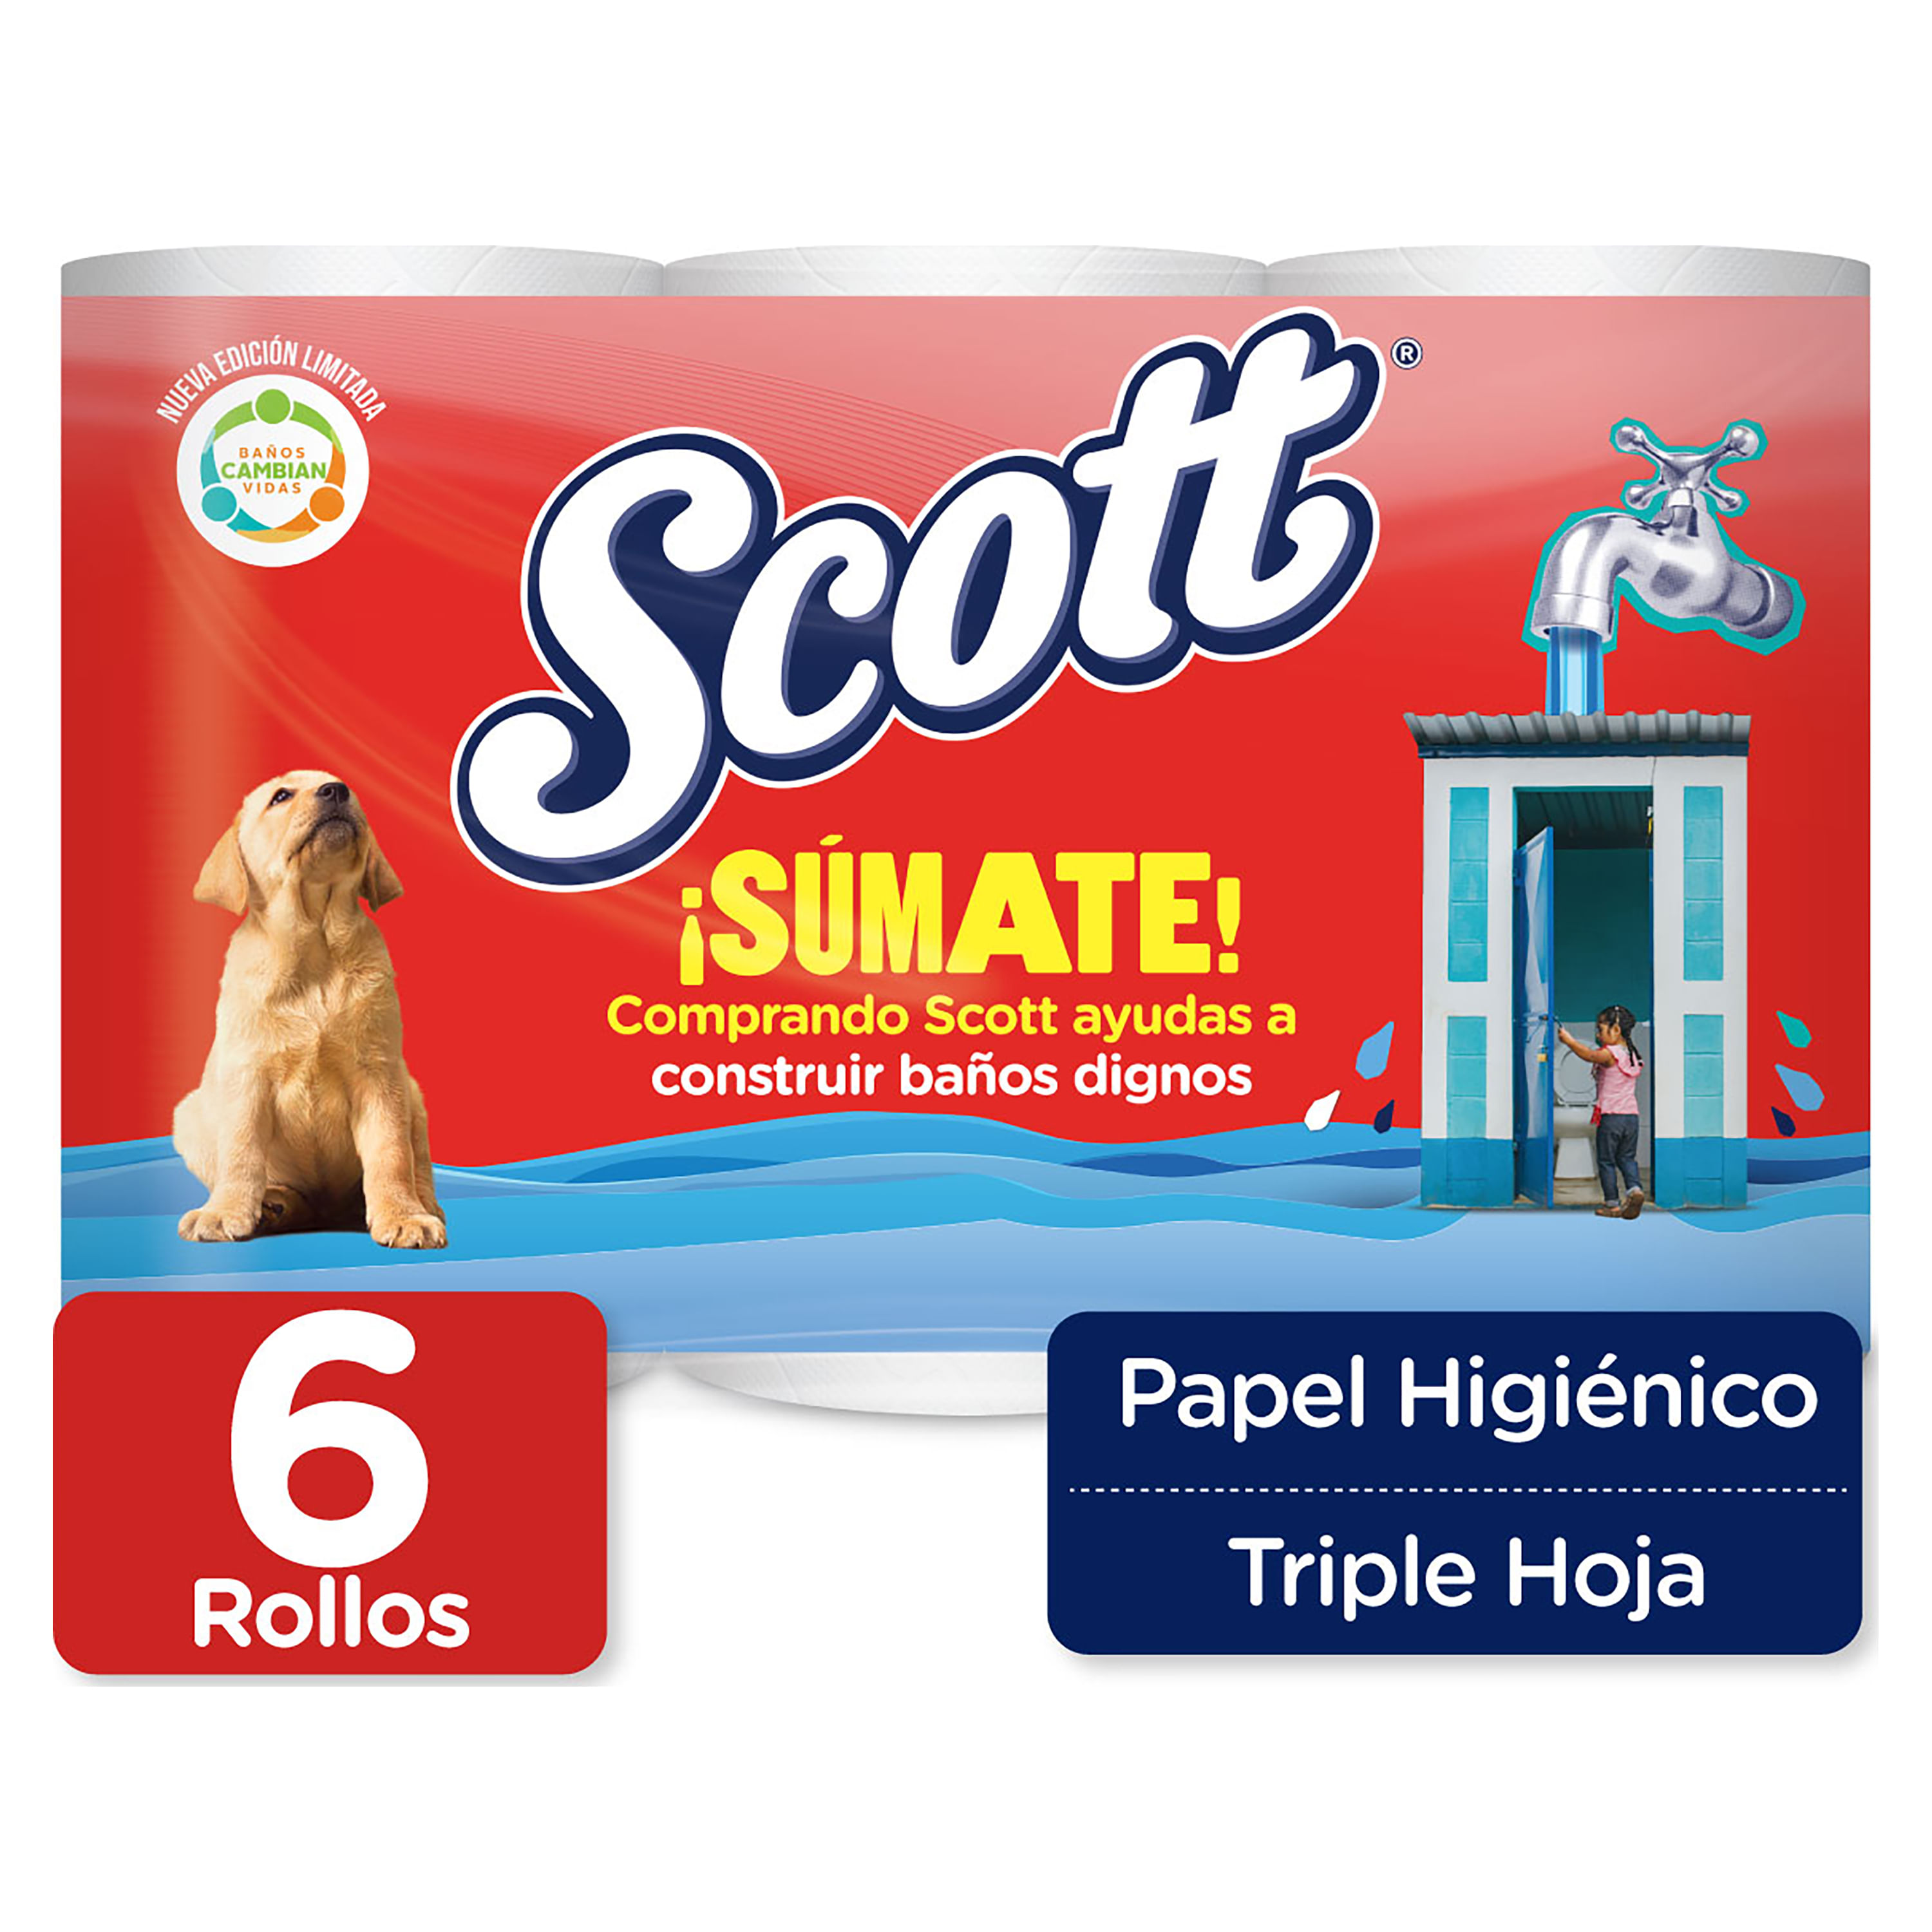 Scottex Original Papel Higiénico 96 rollos, 6 packs de 16 rollos :  : Salud y cuidado personal